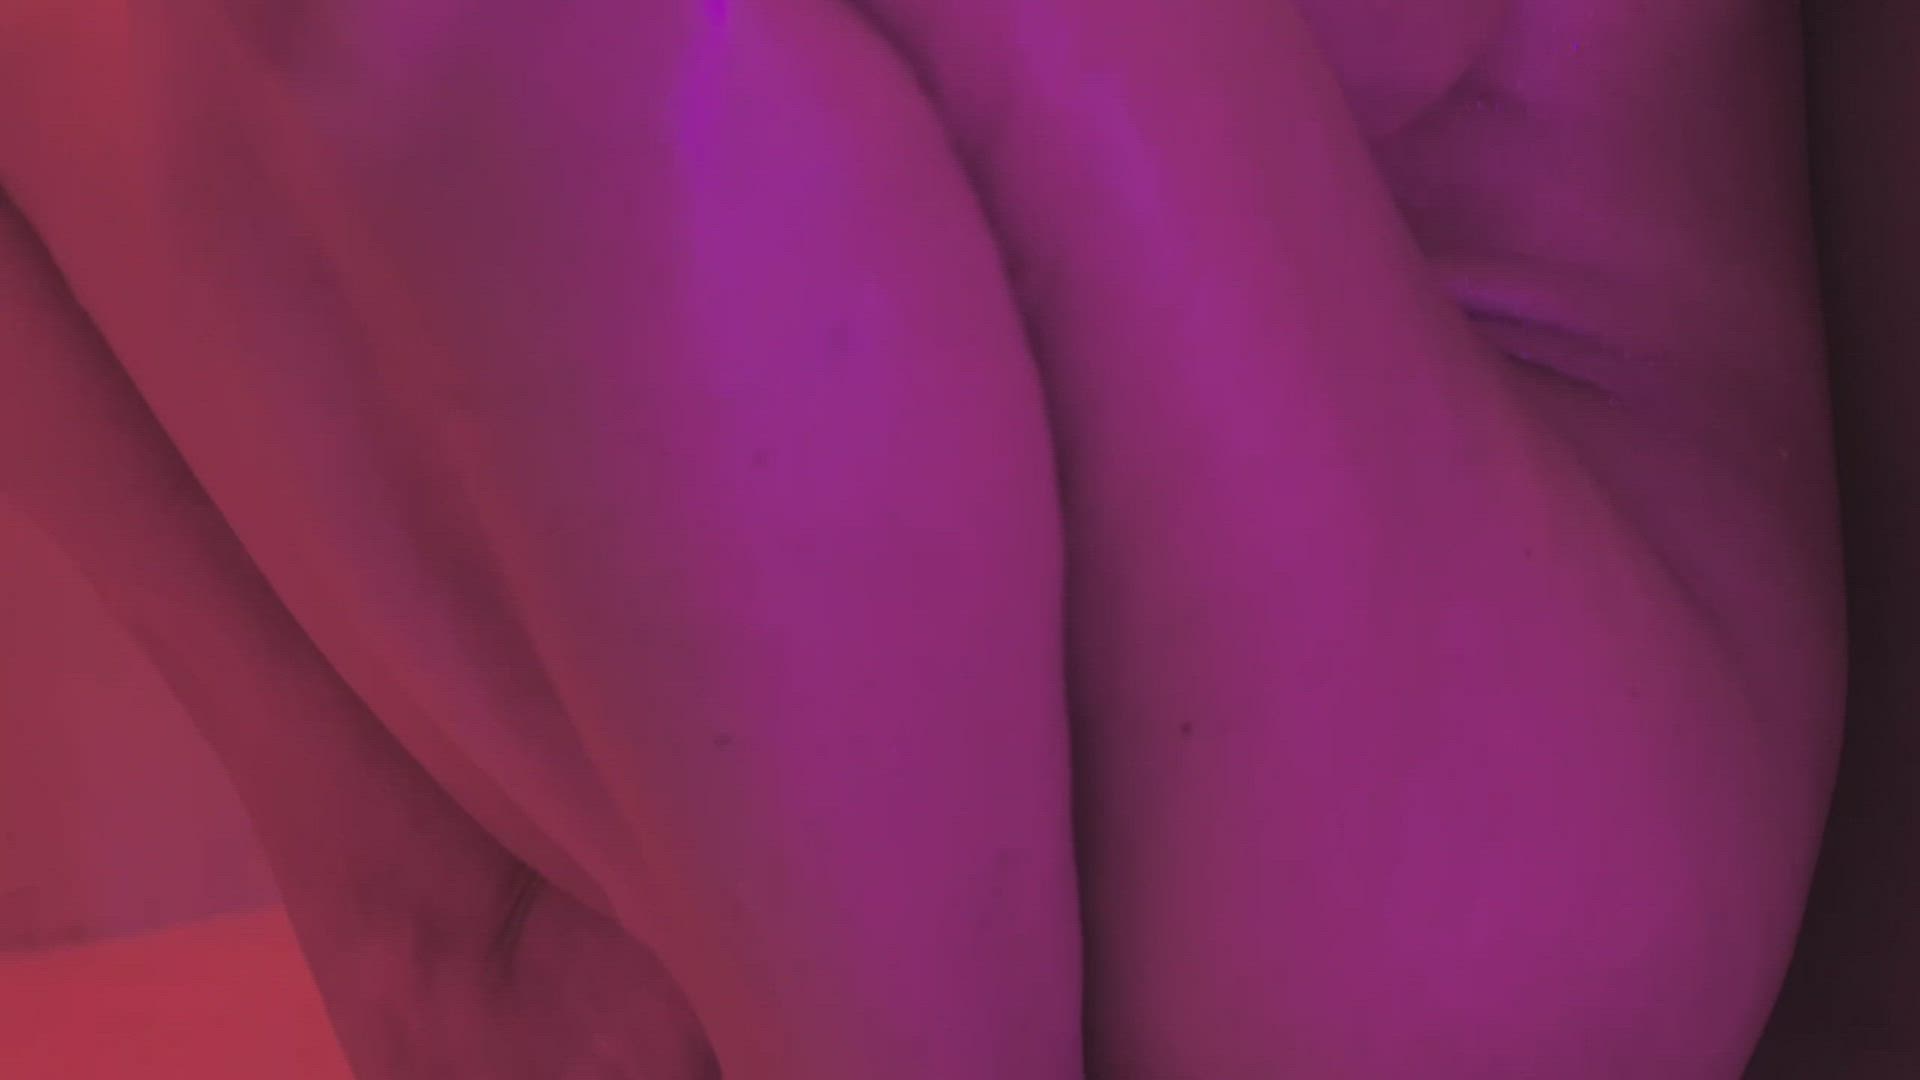 Porn video with onlyfans model Margarita Bernardo <strong>@margaritabernardopremium</strong>